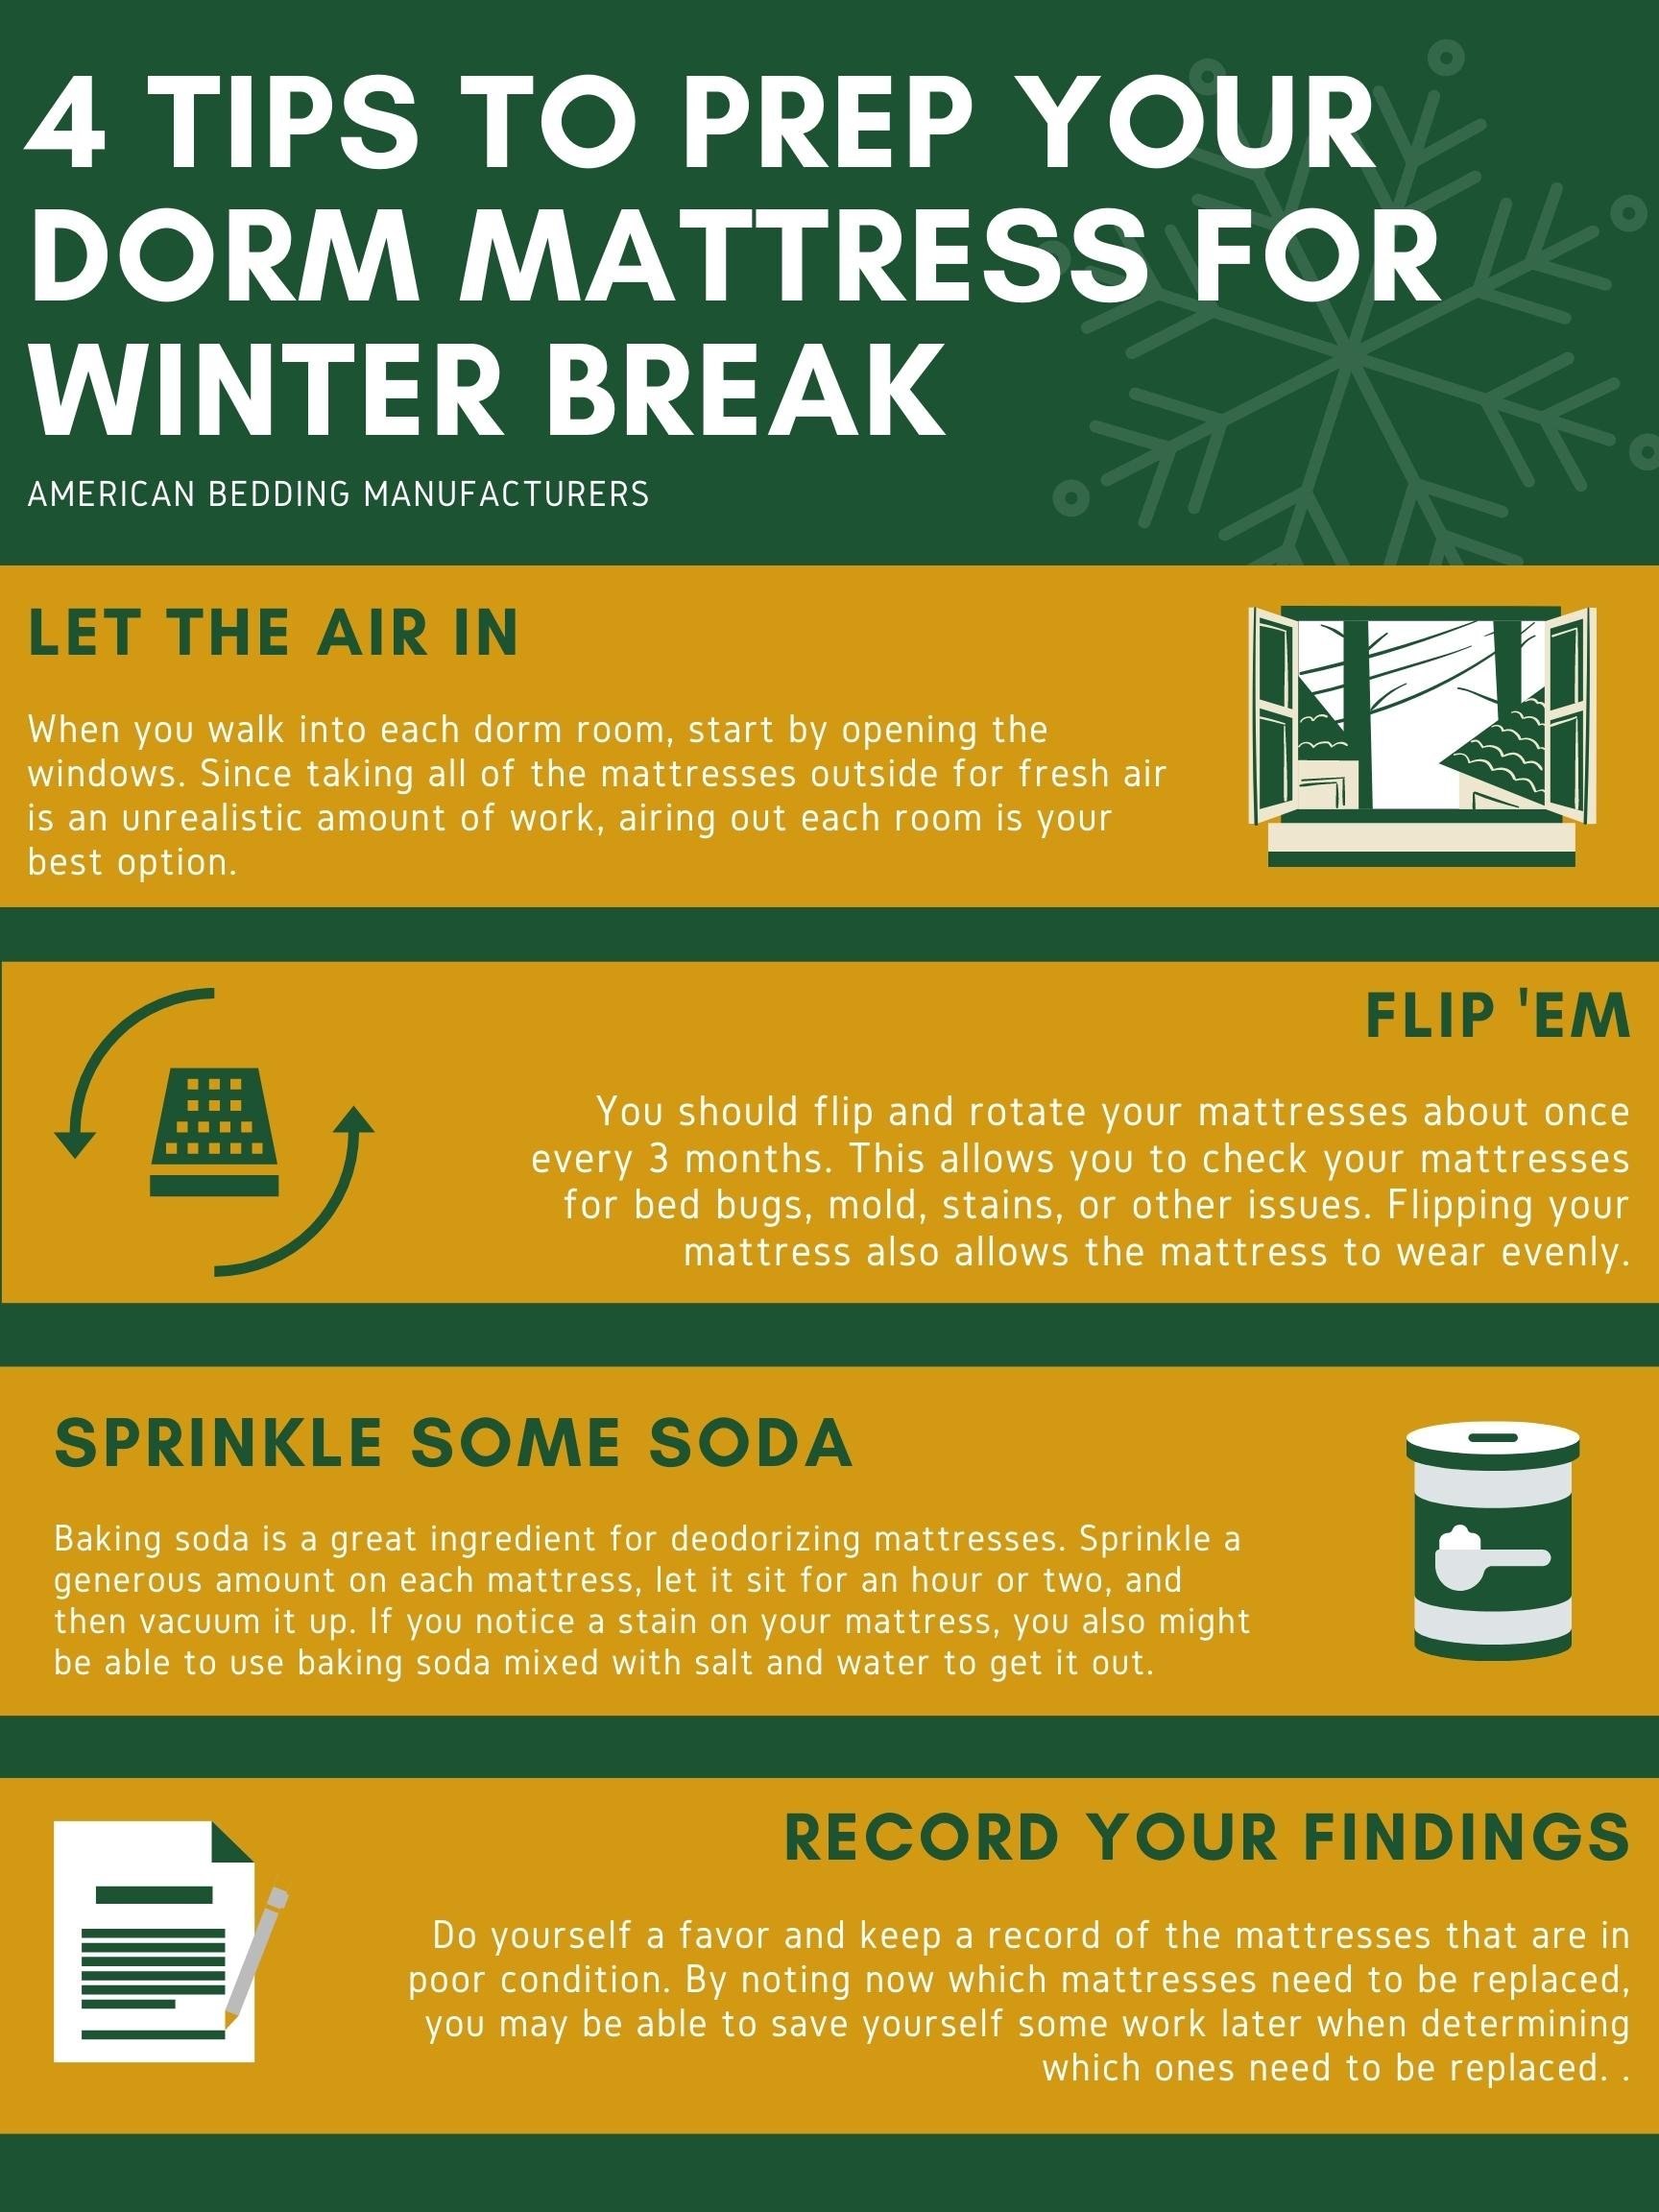 ABM Blog Infographic - 4 Tips to Prep Dorm Mattress for Winter Break Infographic